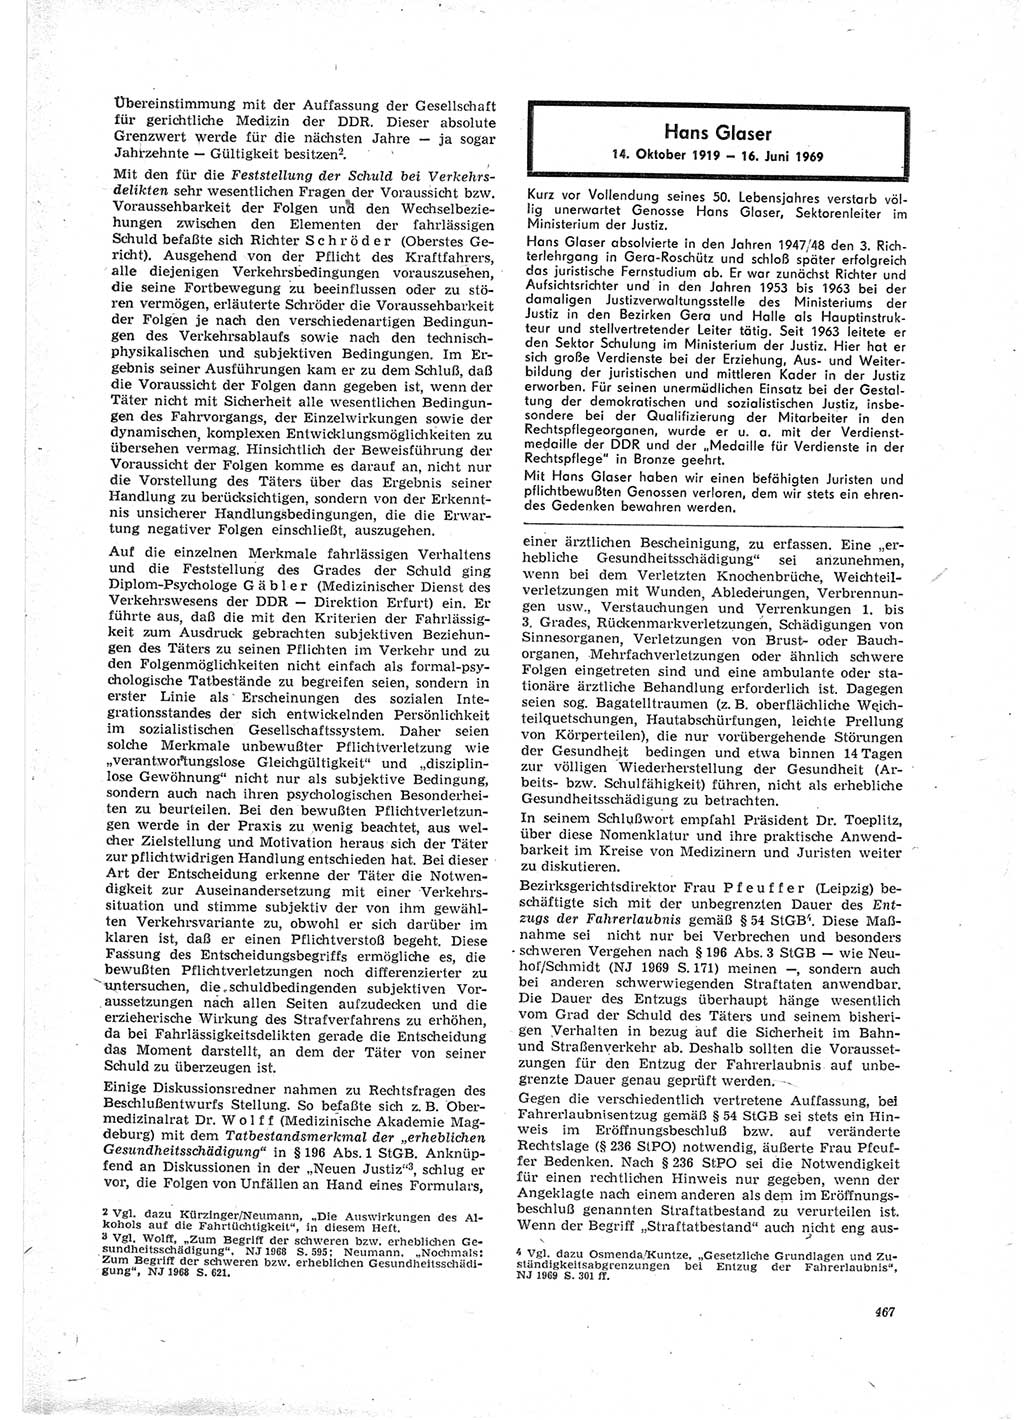 Neue Justiz (NJ), Zeitschrift für Recht und Rechtswissenschaft [Deutsche Demokratische Republik (DDR)], 23. Jahrgang 1969, Seite 467 (NJ DDR 1969, S. 467)